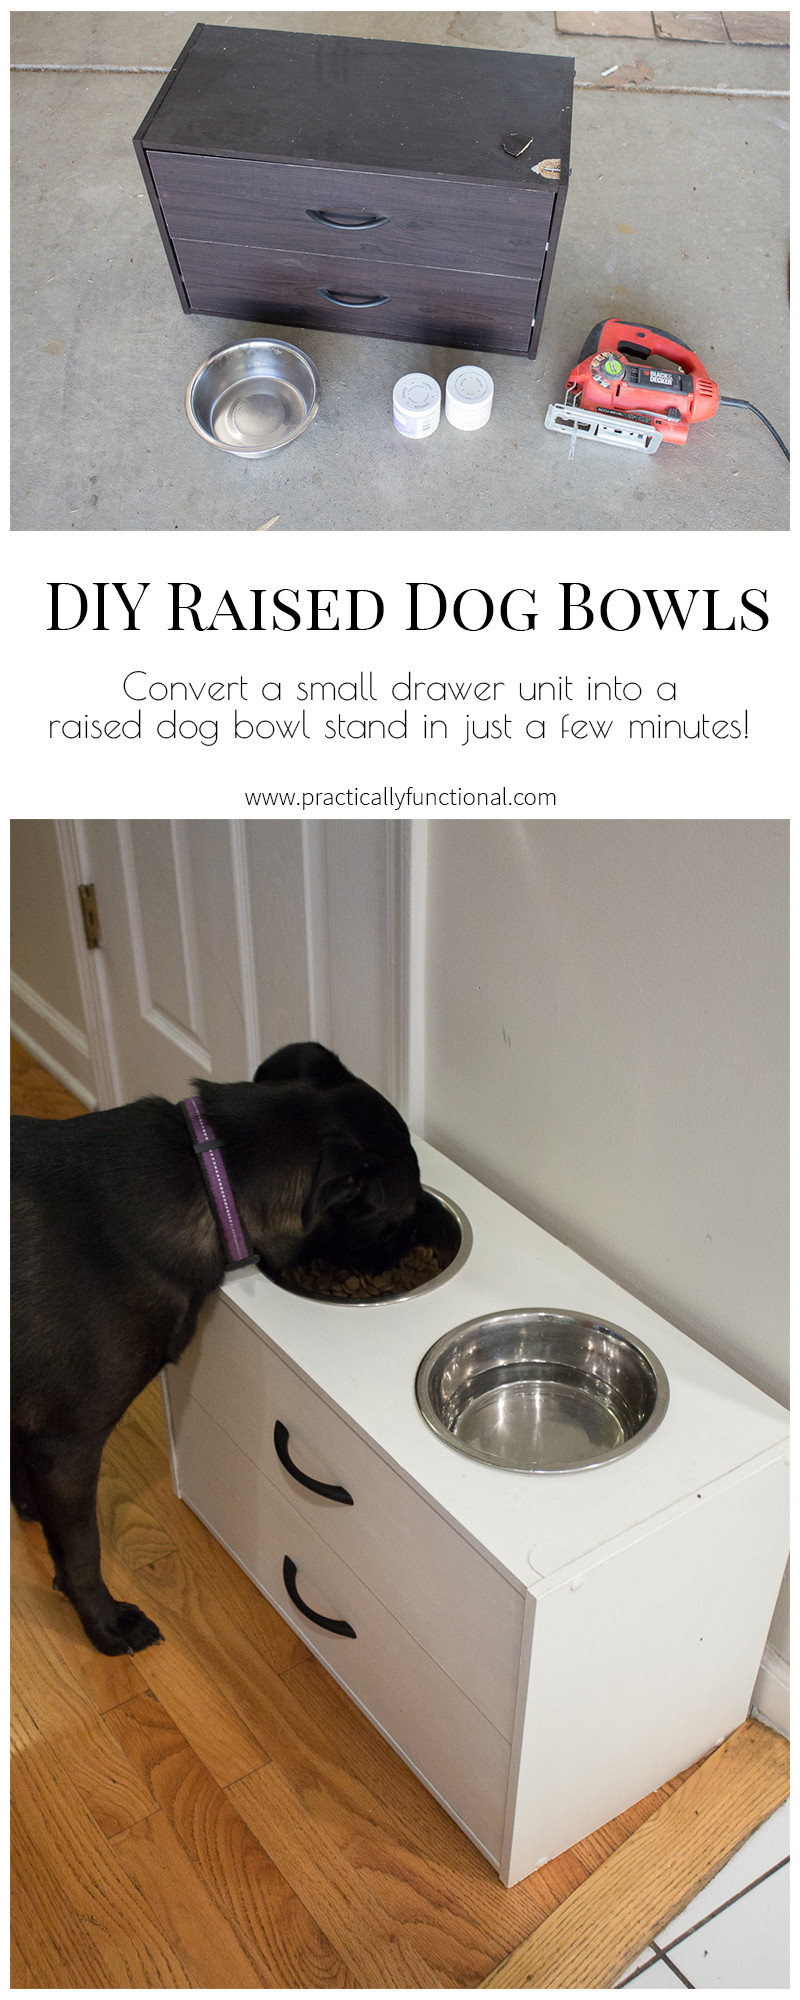 Raised Dog Bowl DIY
 DIY Raised Dog Bowl Stand